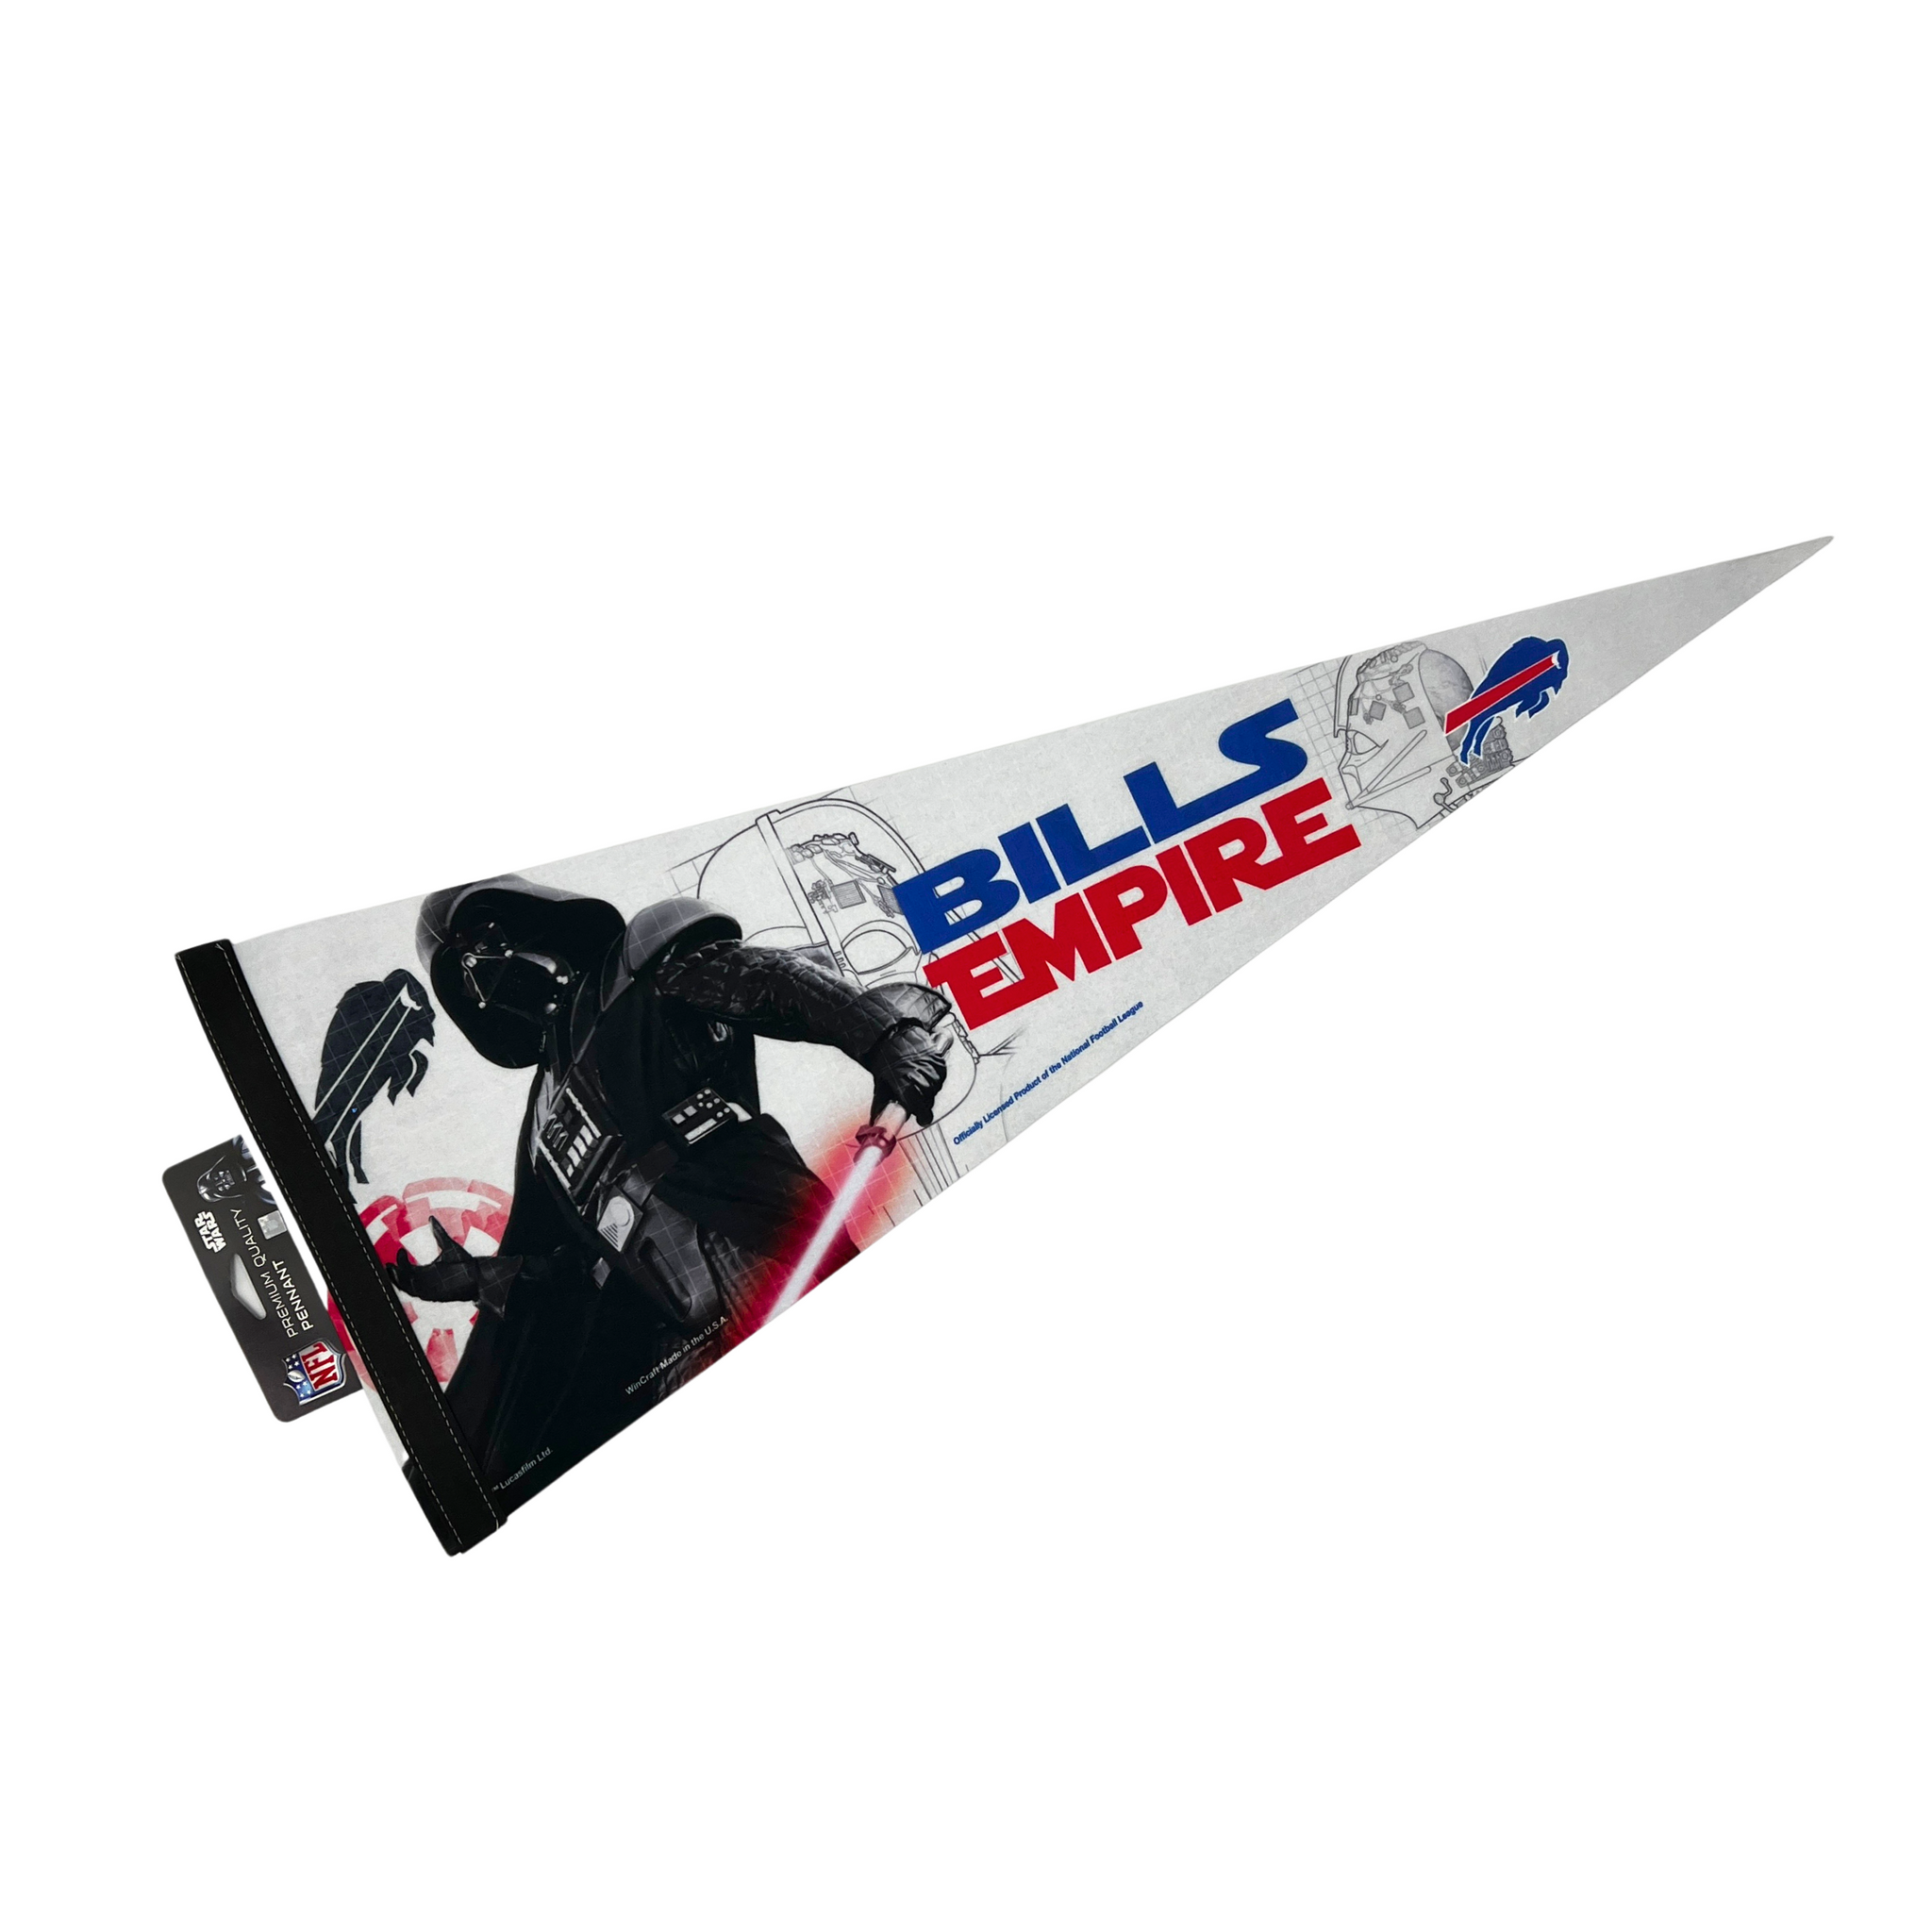 Buffalo Bills x Darth Vader "Bills Empire" Star Wars Pennant